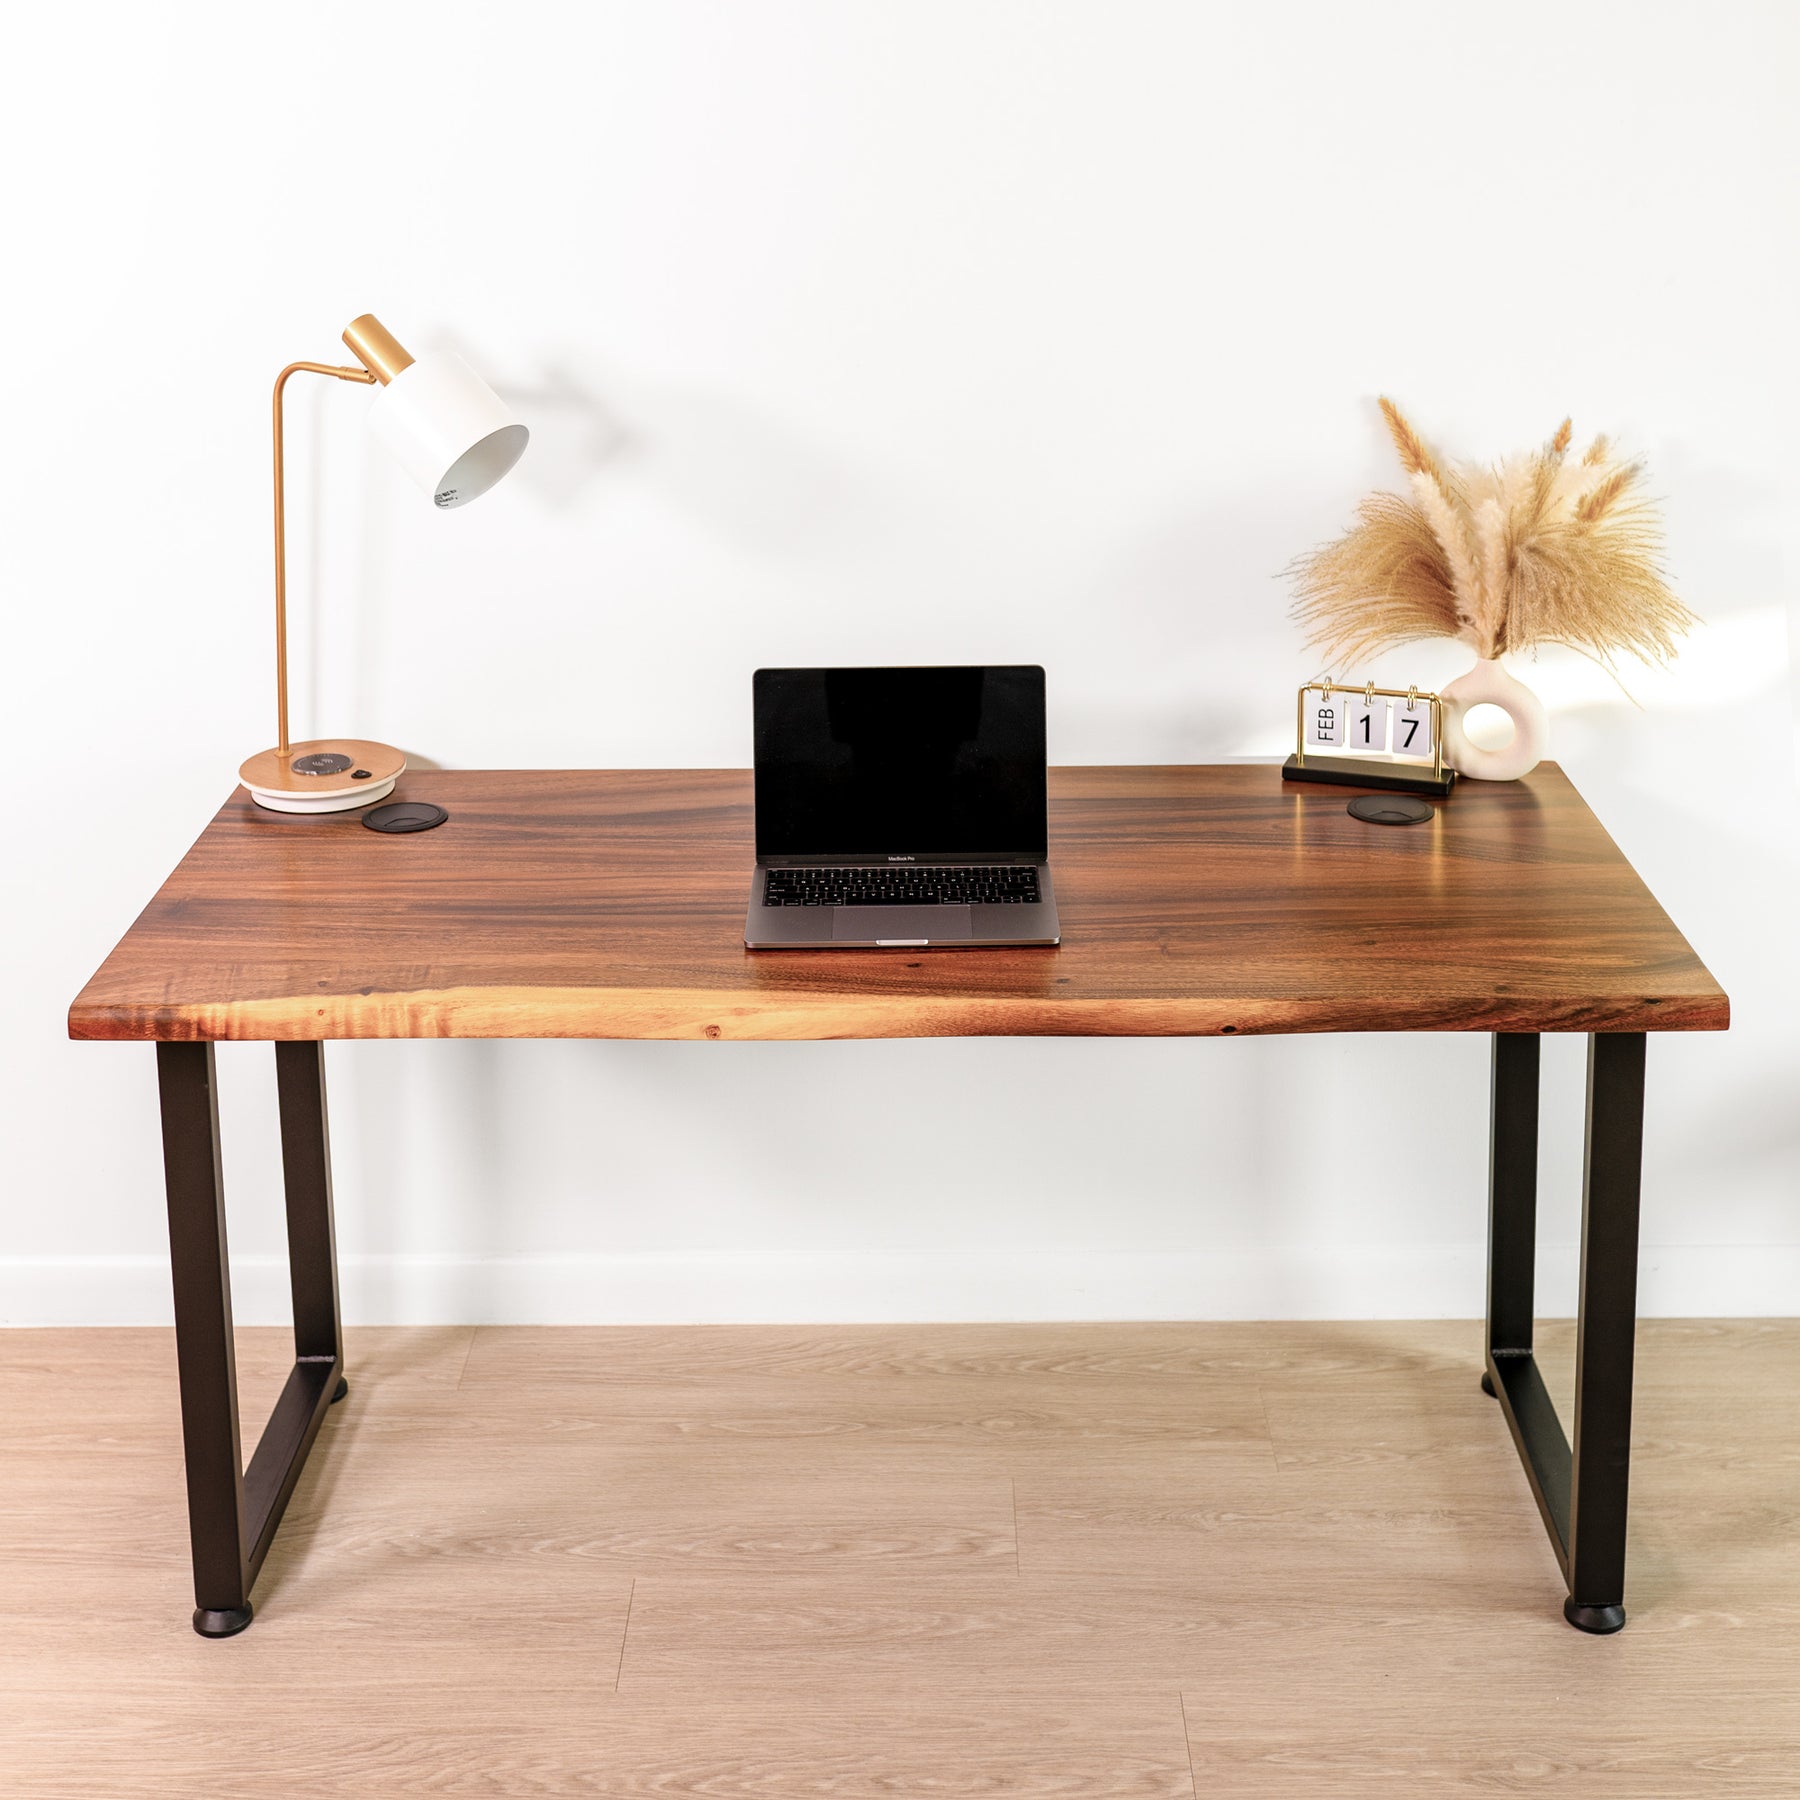 Wood Desk with Drawer - Walnut Computer Desk, Live Edge Desk